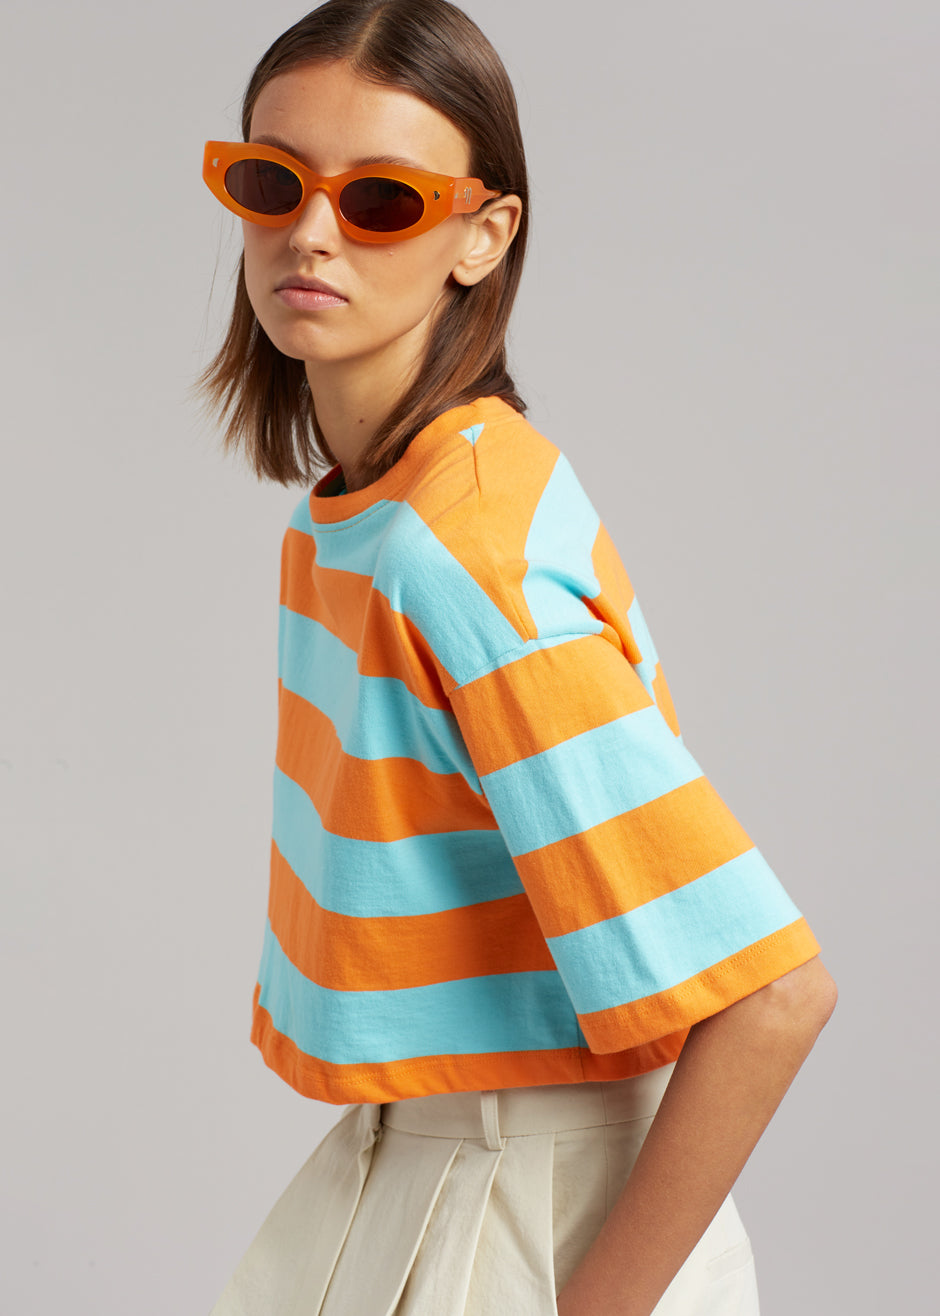 Karina Cropped T-Shirt - Turquoise/Bright Orange - 3